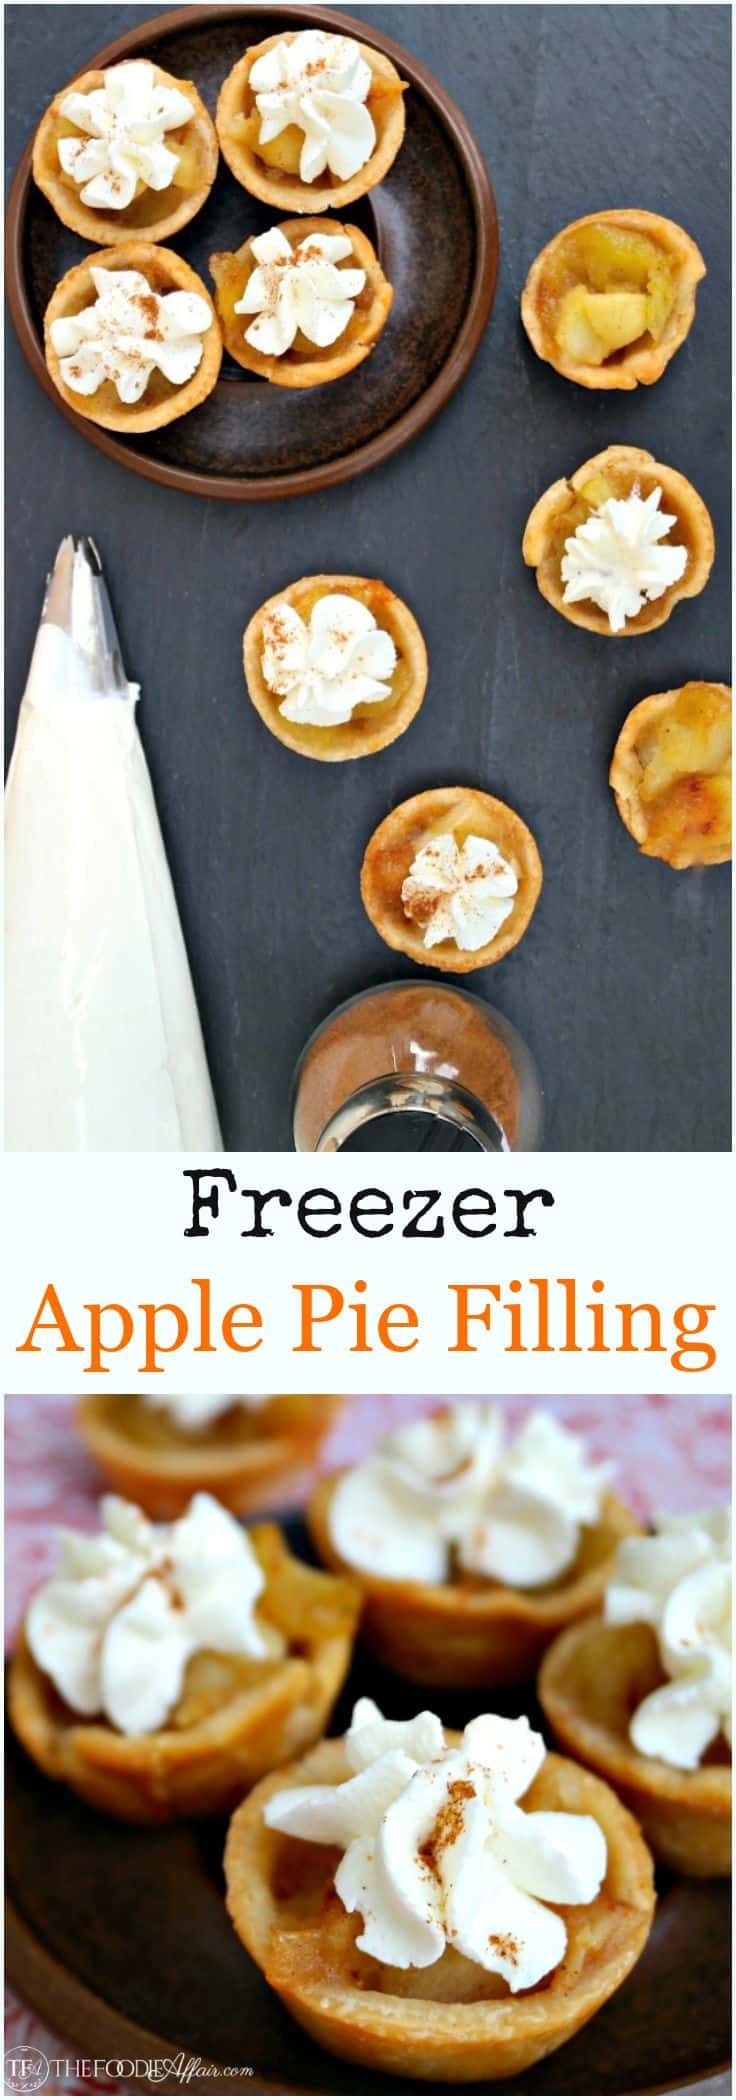 Freezer Apple Pie Filling
 Freezer Apple Pie Filling